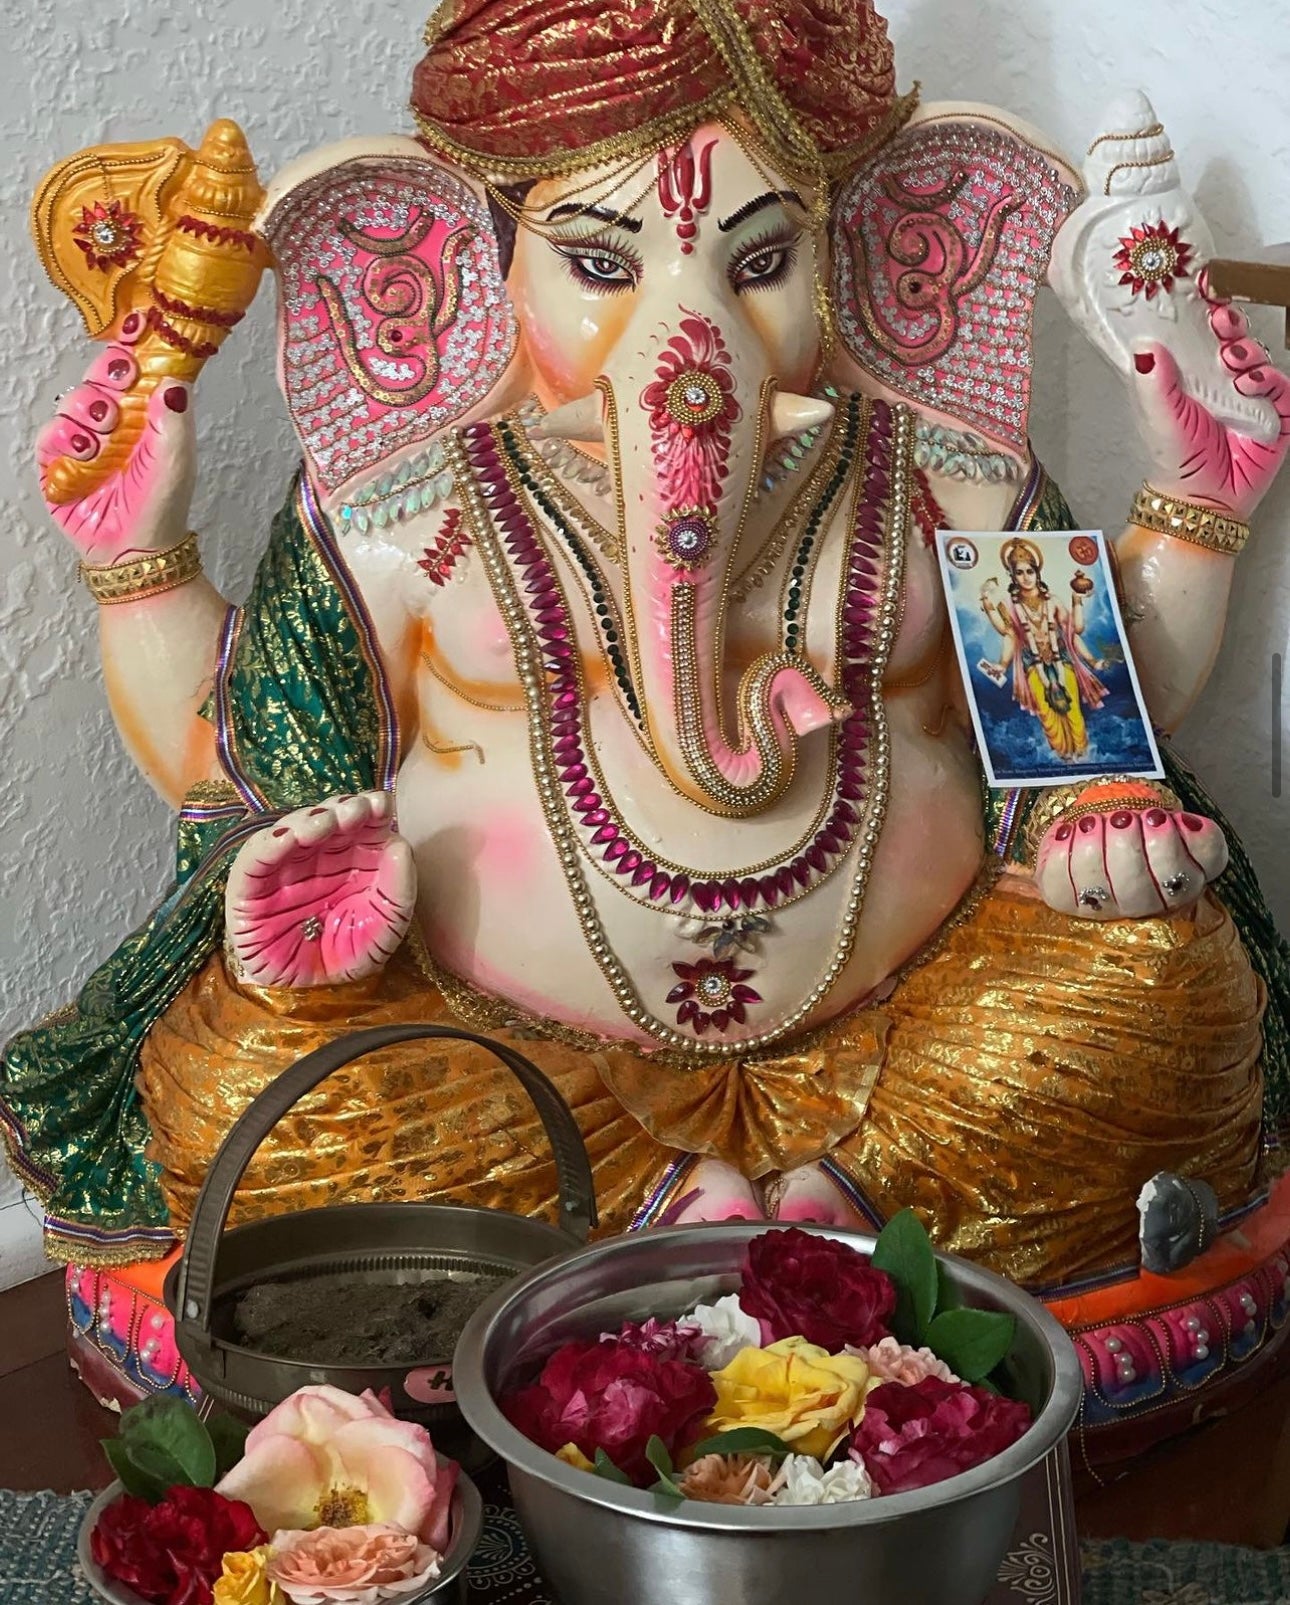 Happy Ganesh Chaturthi - Lord Ganeshas’s birthday